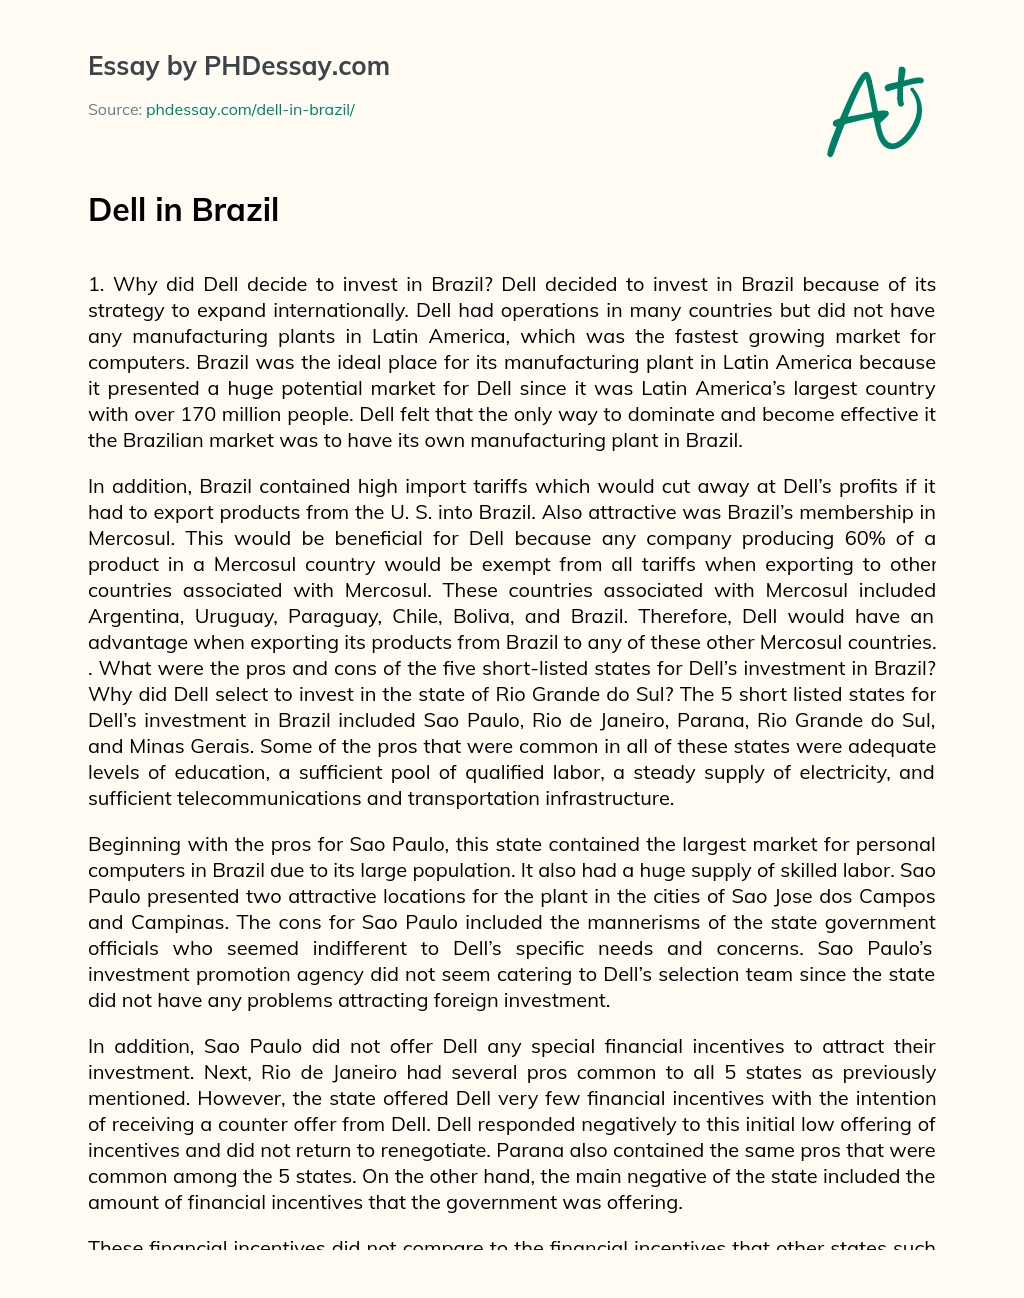 Dell in Brazil essay